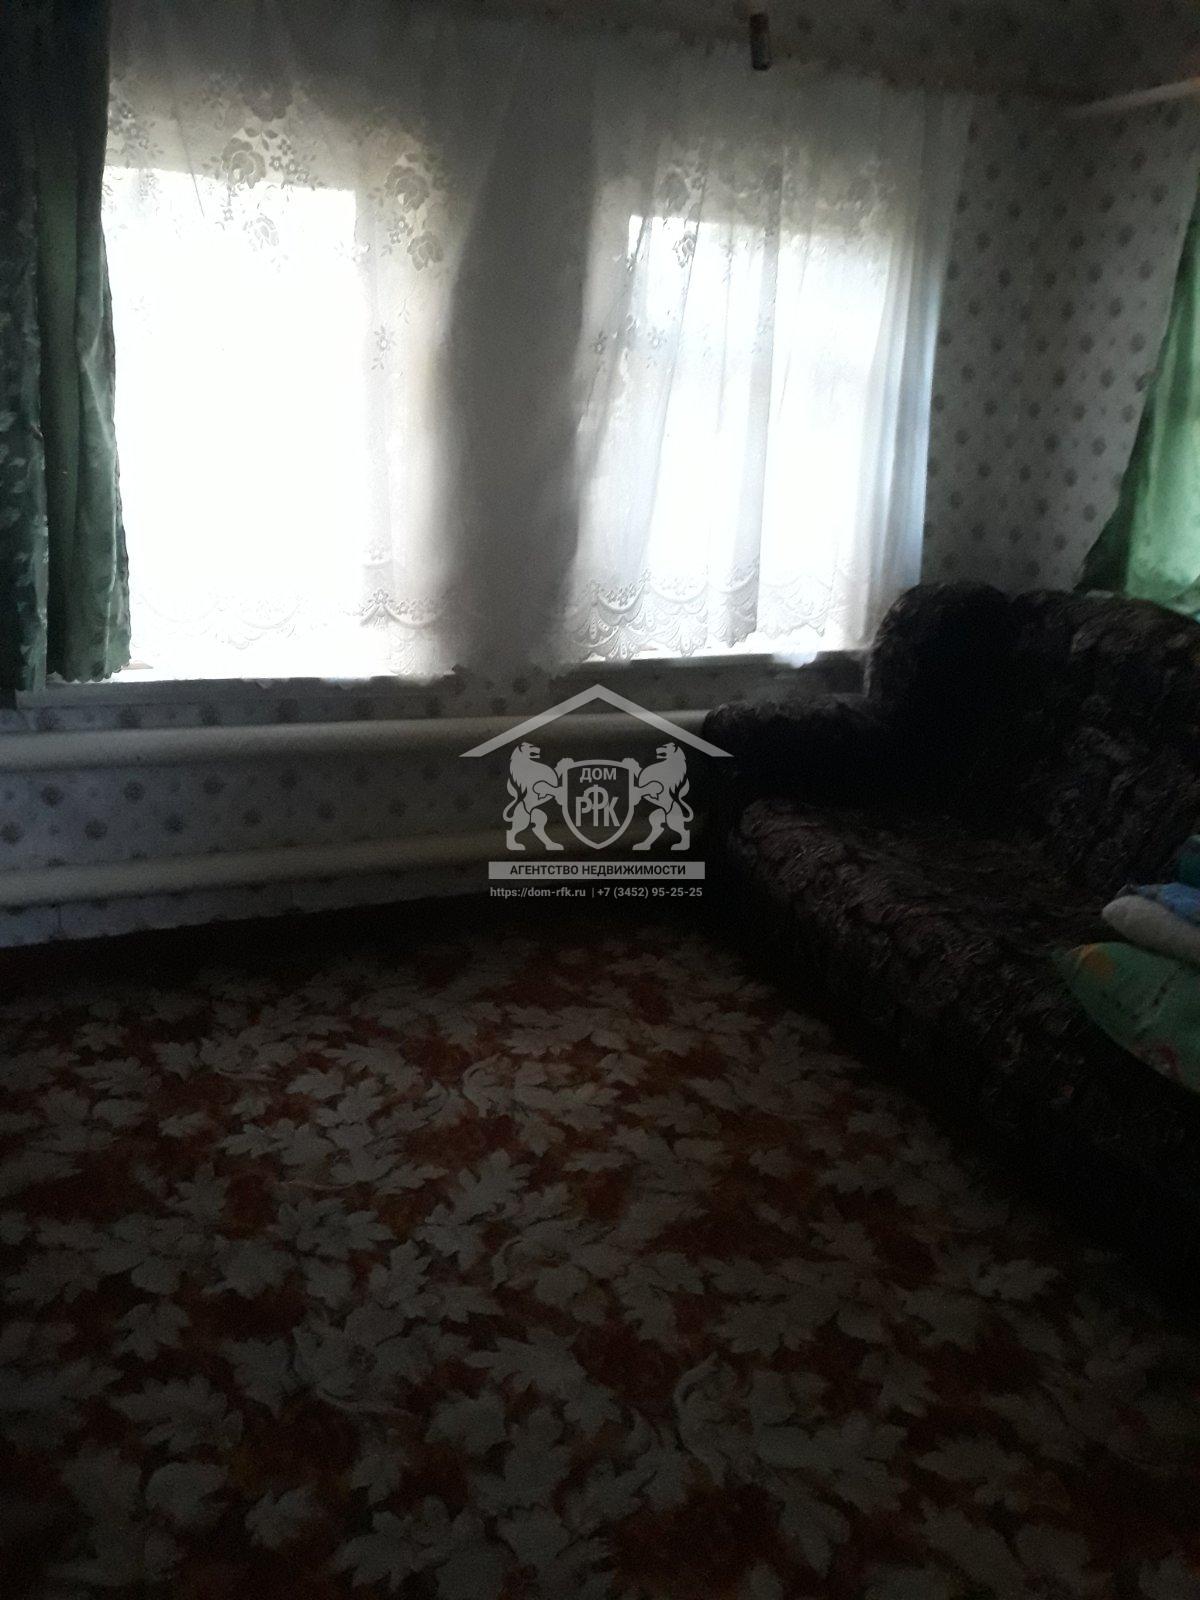 Продается дом 50кв.м. с. Викулово, Викуловского района, Тюменской области